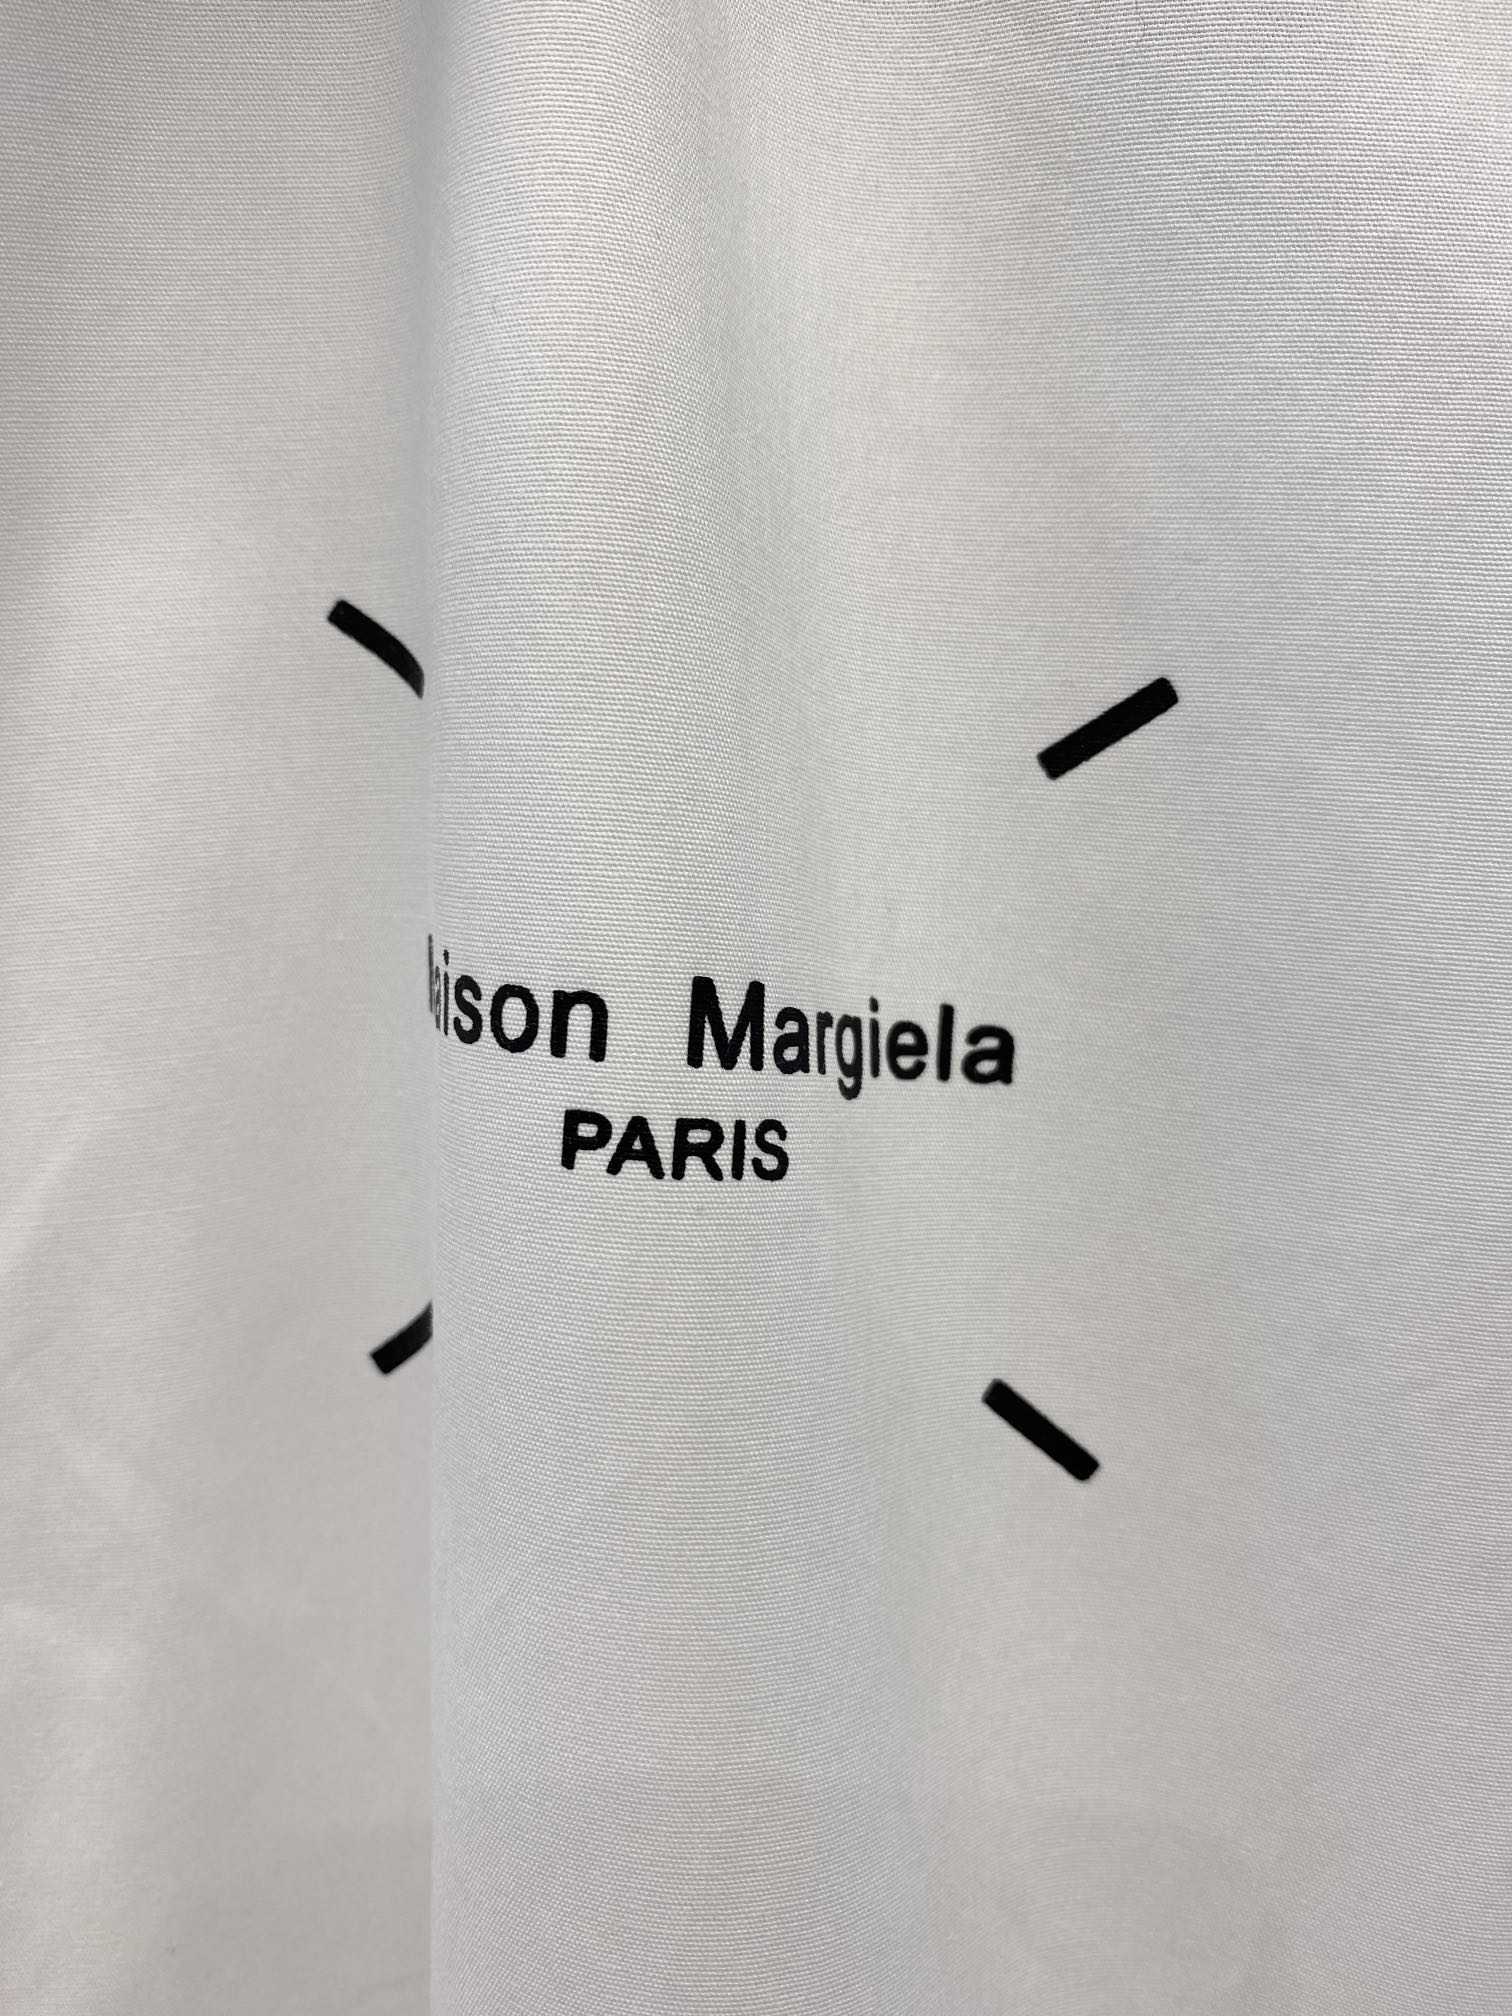 麦吉拉2024新款衬衫打造时装艺术感立体剪裁修身版型上身效果很帅气微彰显品位整体细节可以对比效果非常有型